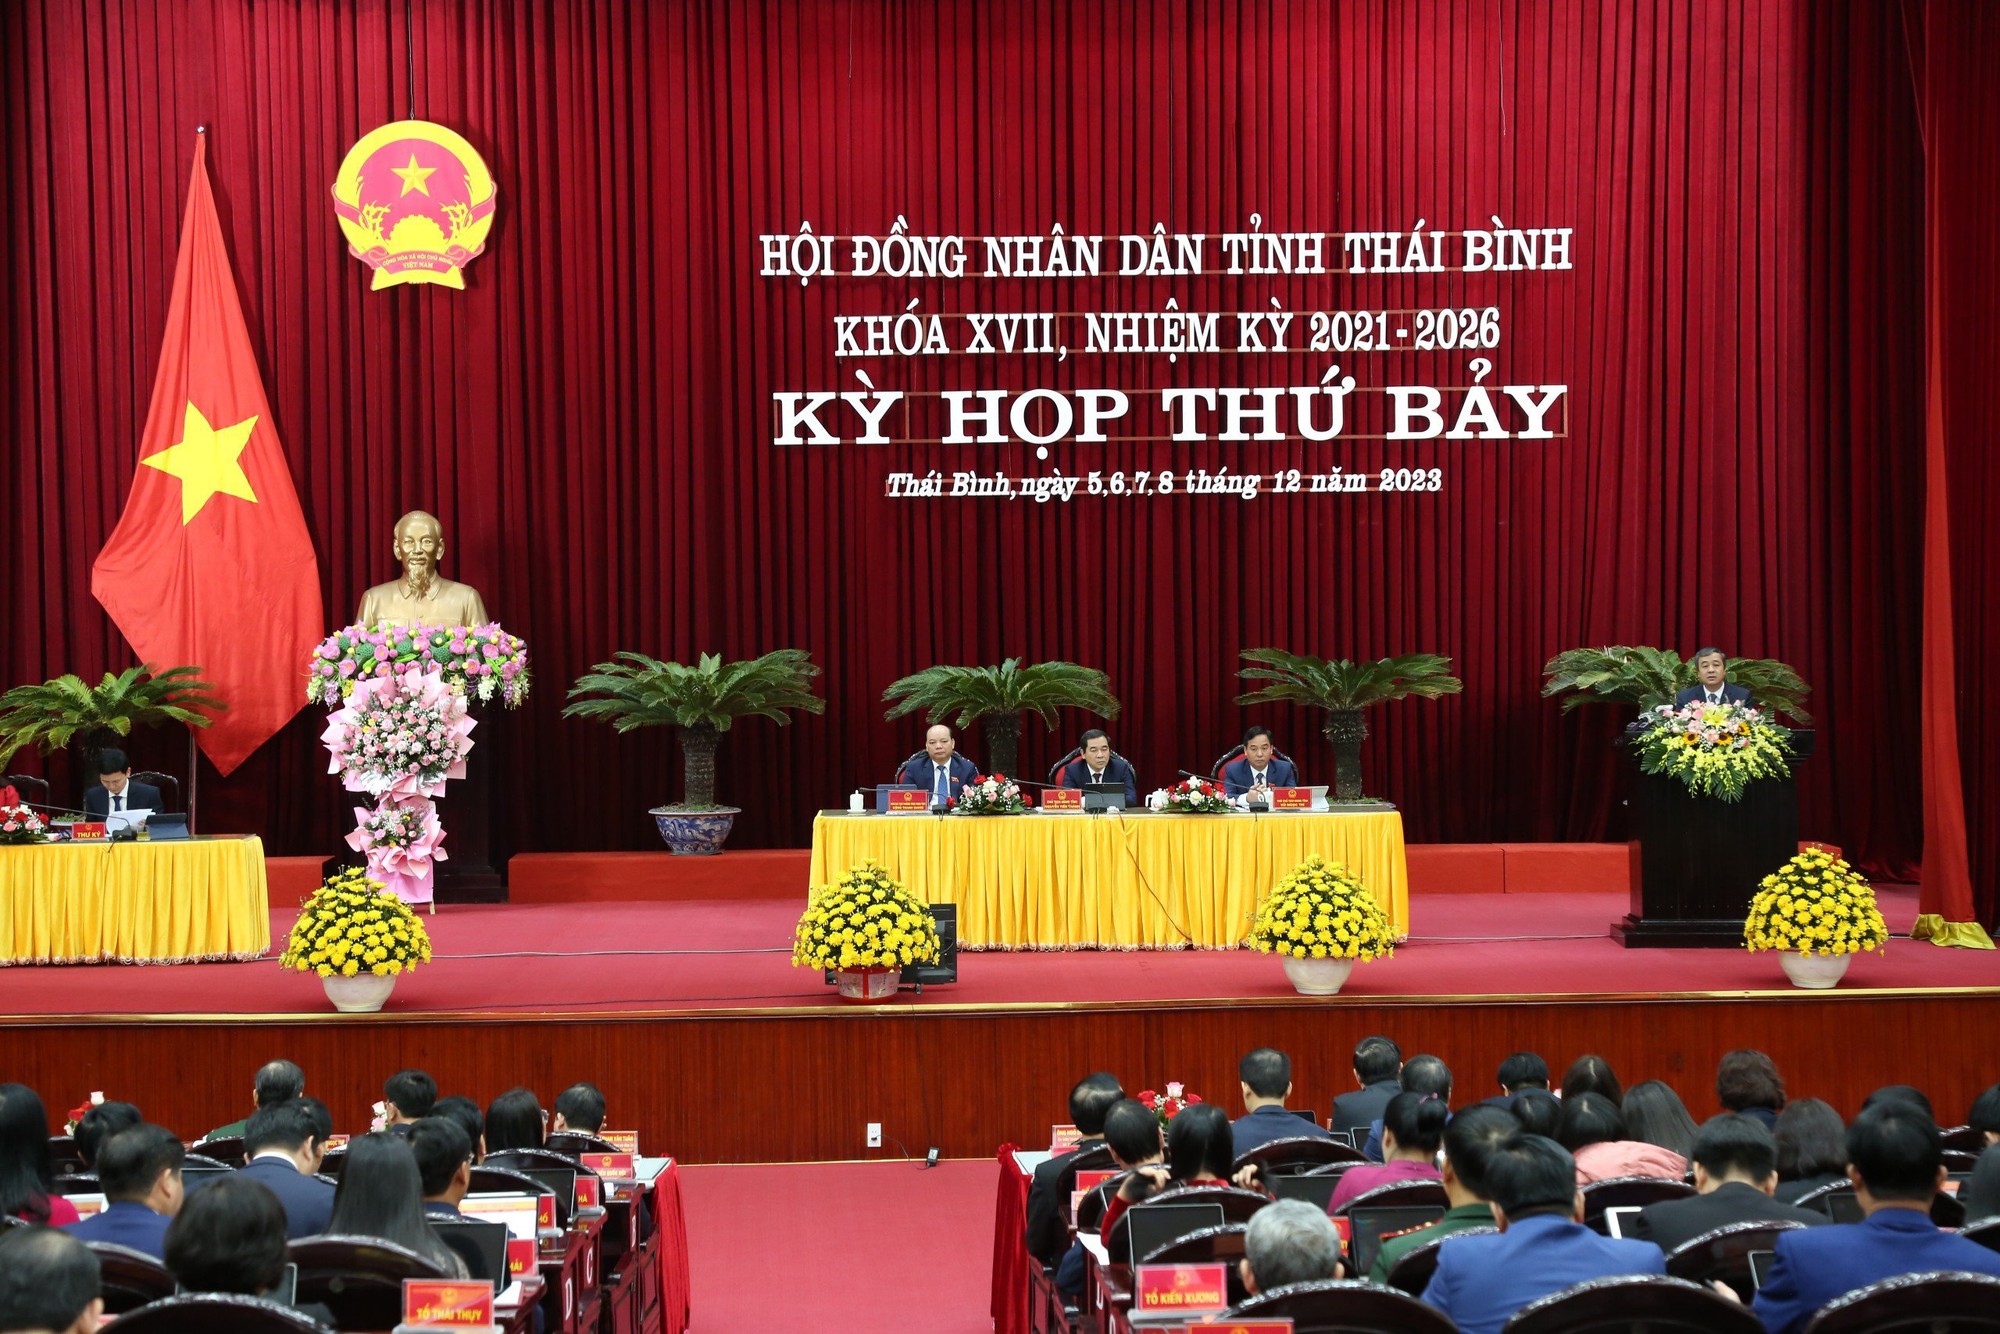 Chủ tịch UBND và Chủ tịch HĐND tỉnh Thái Bình đạt 100% phiếu tín nhiệm cao - Ảnh 3.